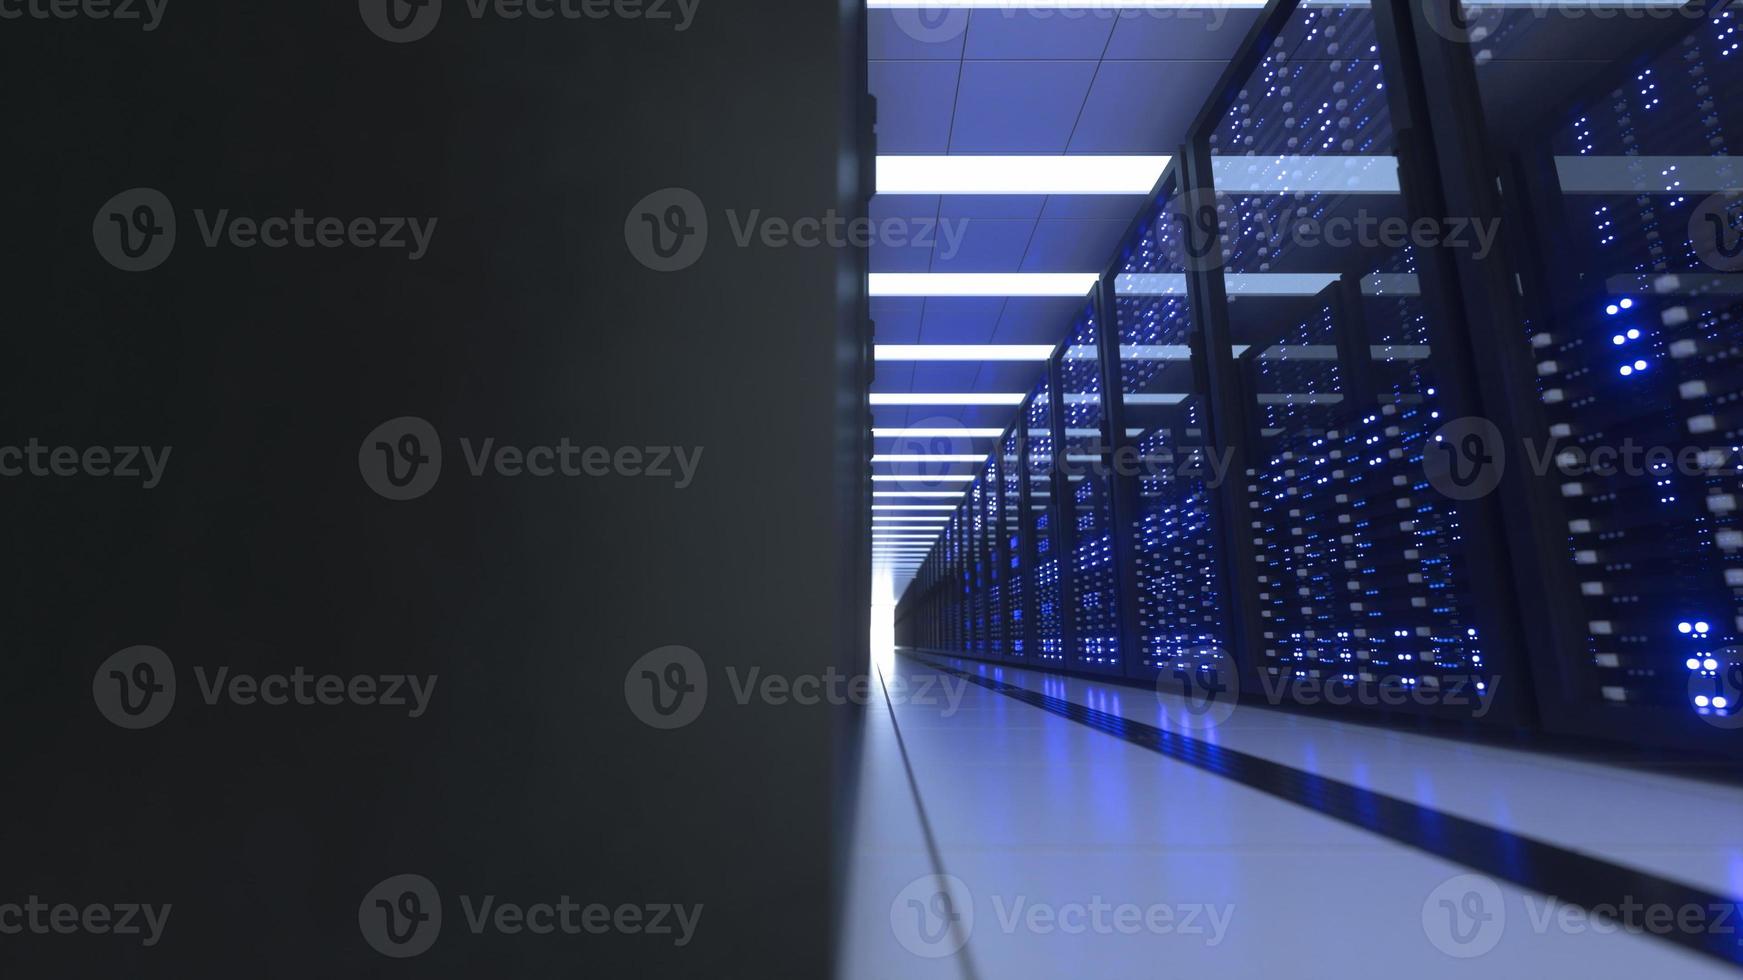 gegevens centrum computer rekken in netwerk veiligheid server kamer cryptogeld mijnbouw foto